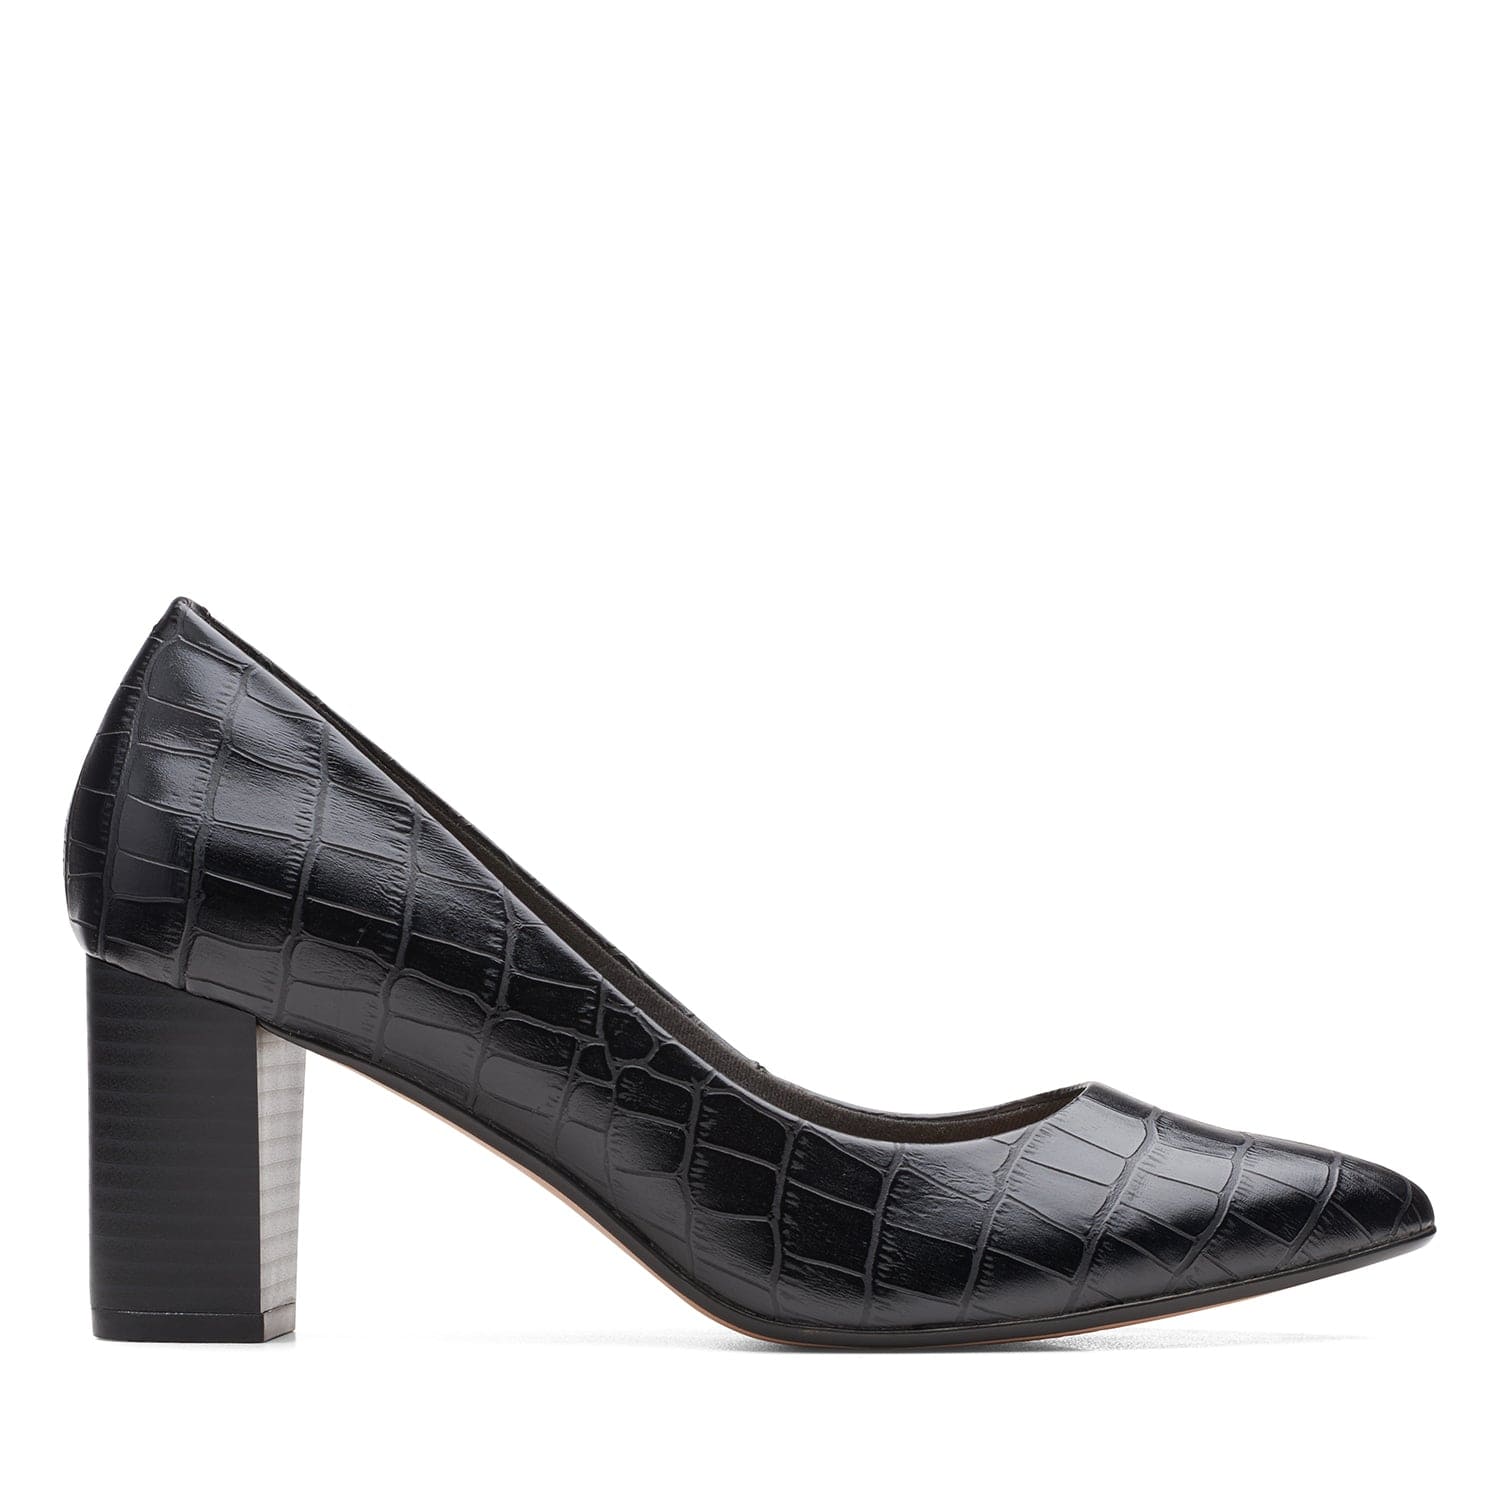 Clarks Aubrie Sun Shoes - Black Croc - 261634094 - D Width (Standard Fit)